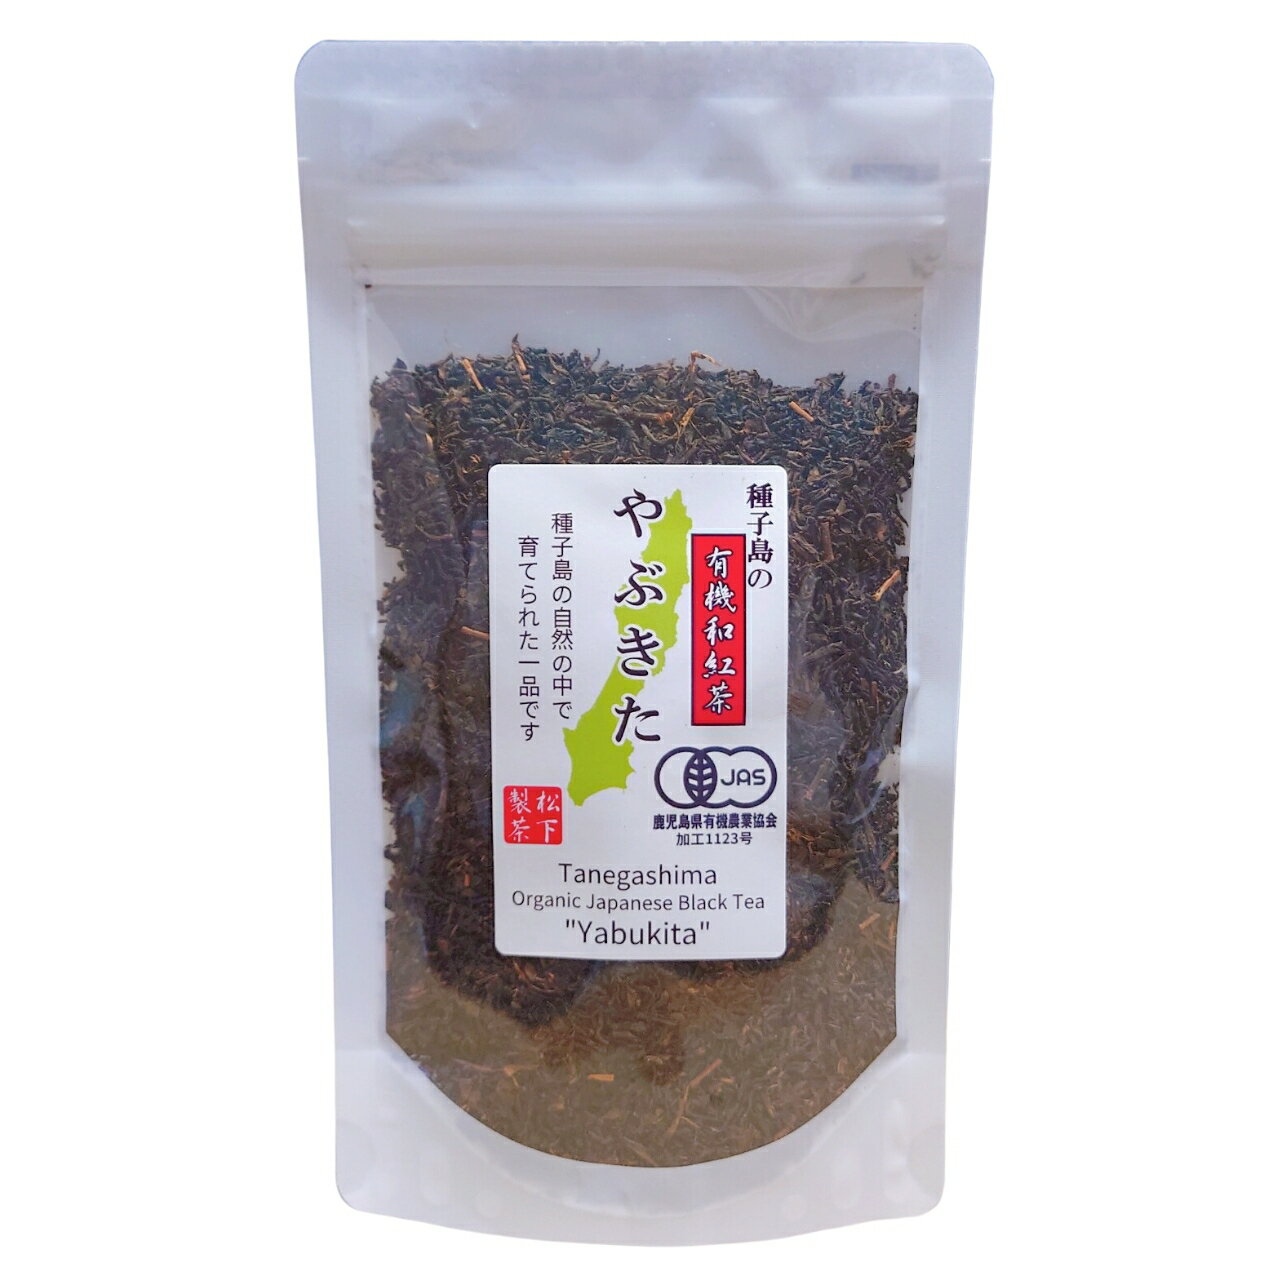 種子島の有機和紅茶『やぶきた』 茶葉(リーフ) 60g 松下製茶